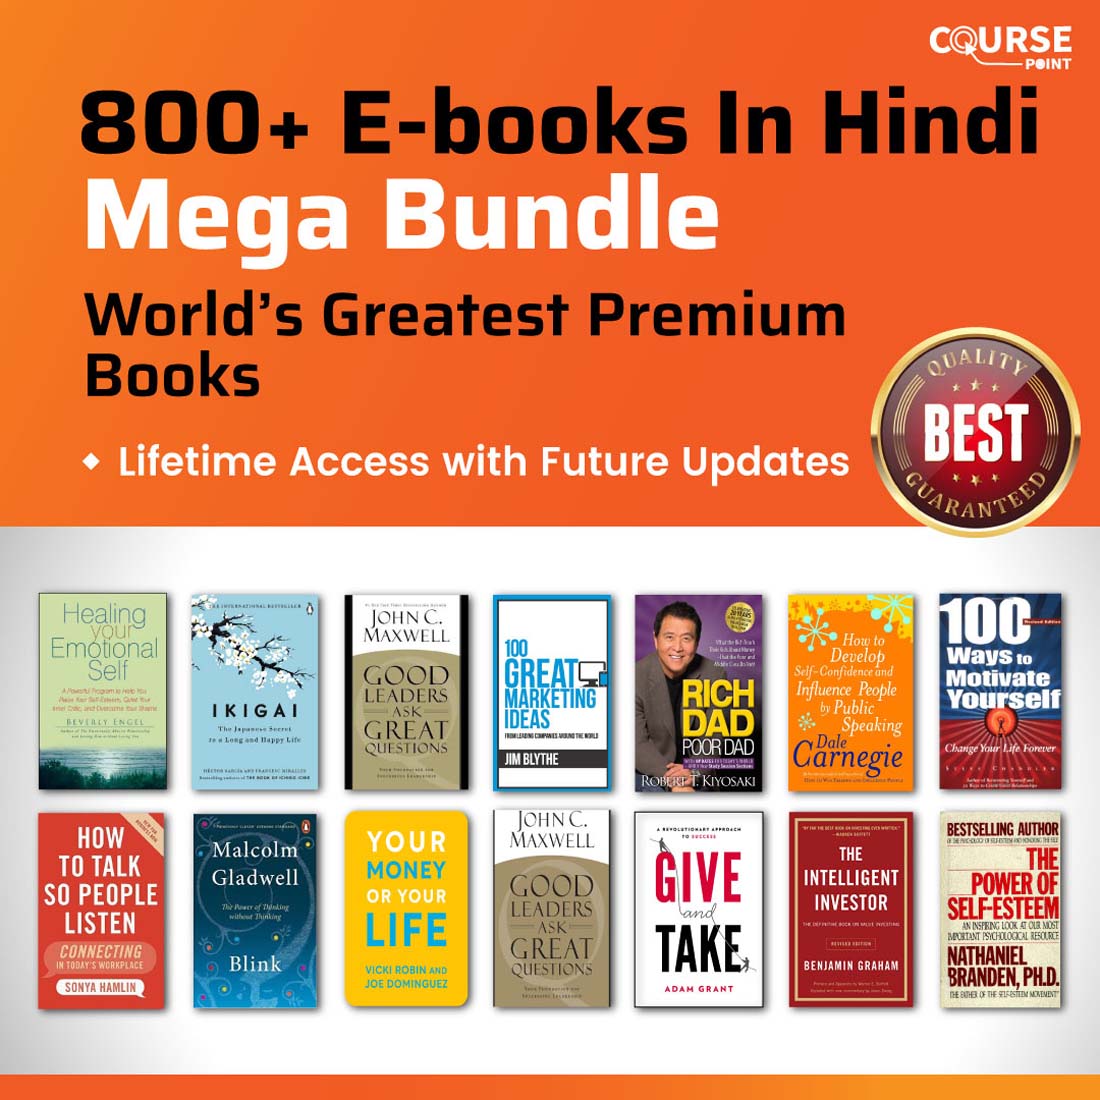 800+ E-books Mega Bundle ( in Hindi ) – World’s Greatest Premium Books preview image.